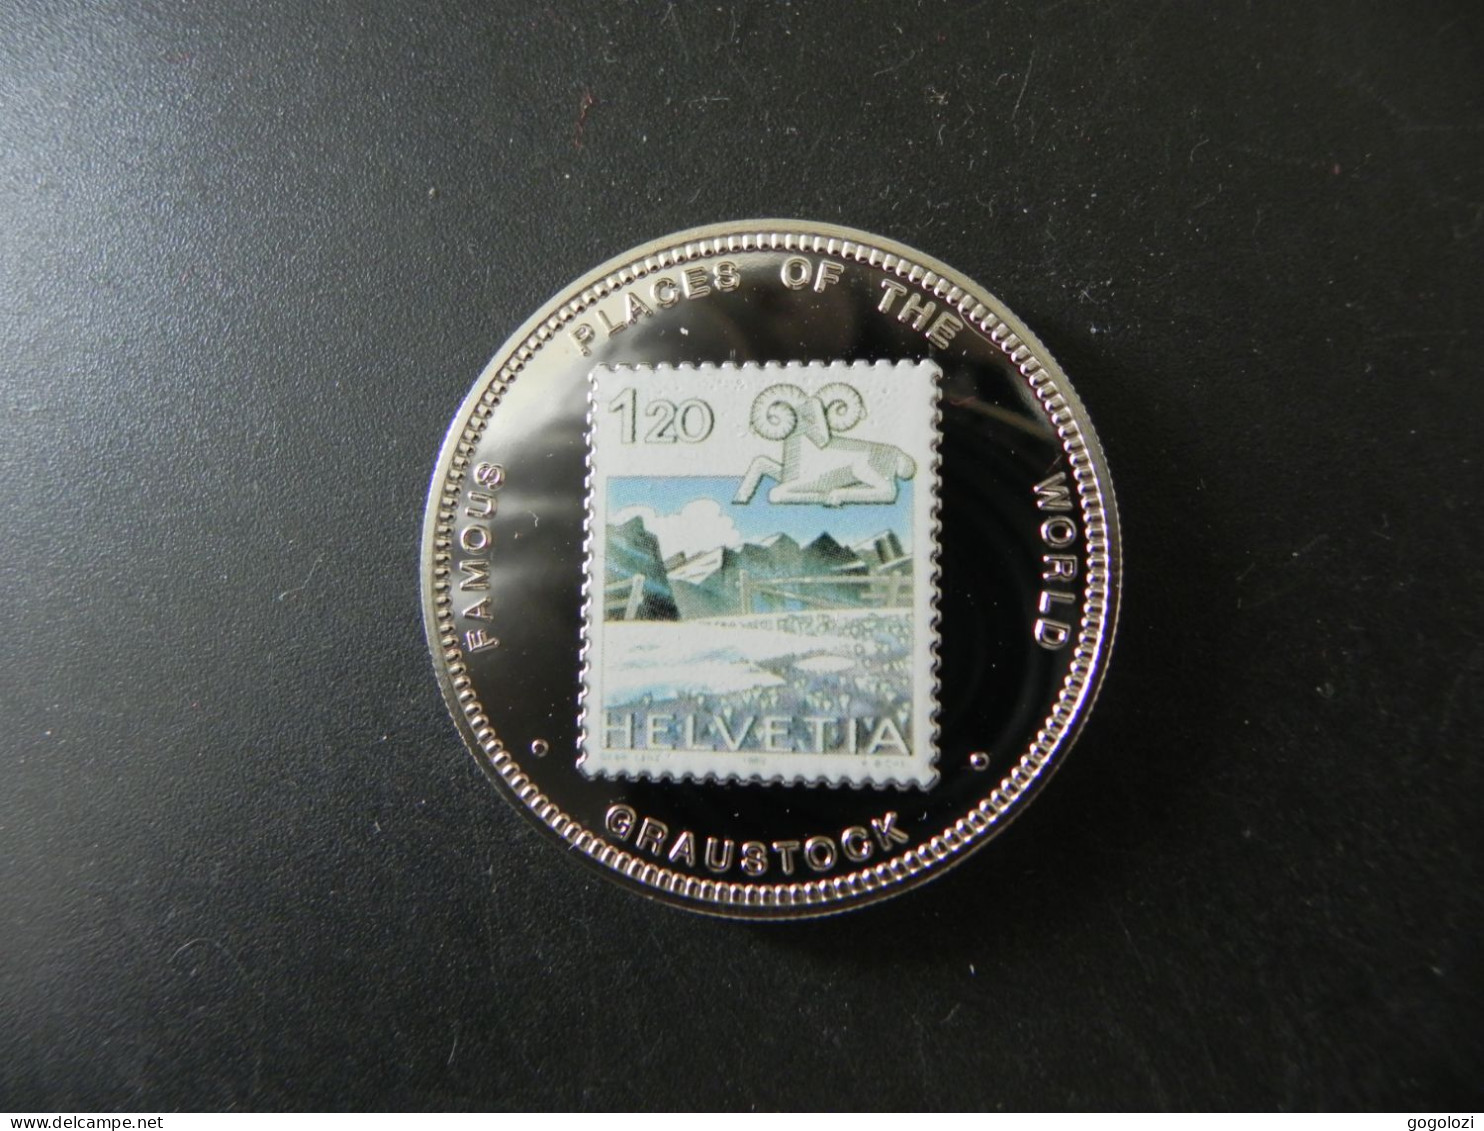 Uganda 1000 Shillings 1999 - Famous Places Of The World Switzerland Graustock - Uganda